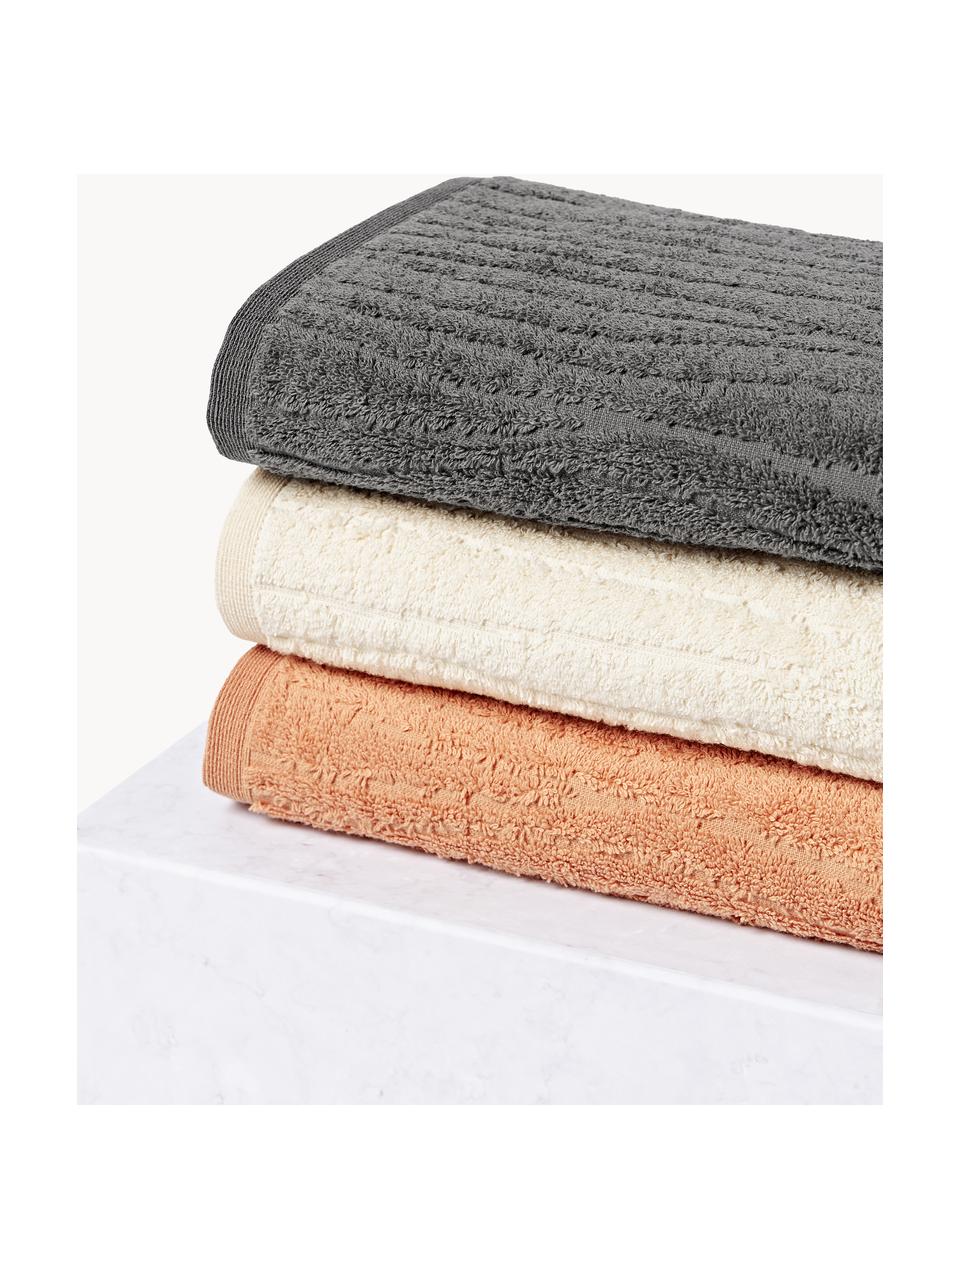 Komplet ręczników Audrina, różne rozmiary, Brzoskwiniowy, 4 elem. (ręcznik do rąk & ręcznik kąpielowy)